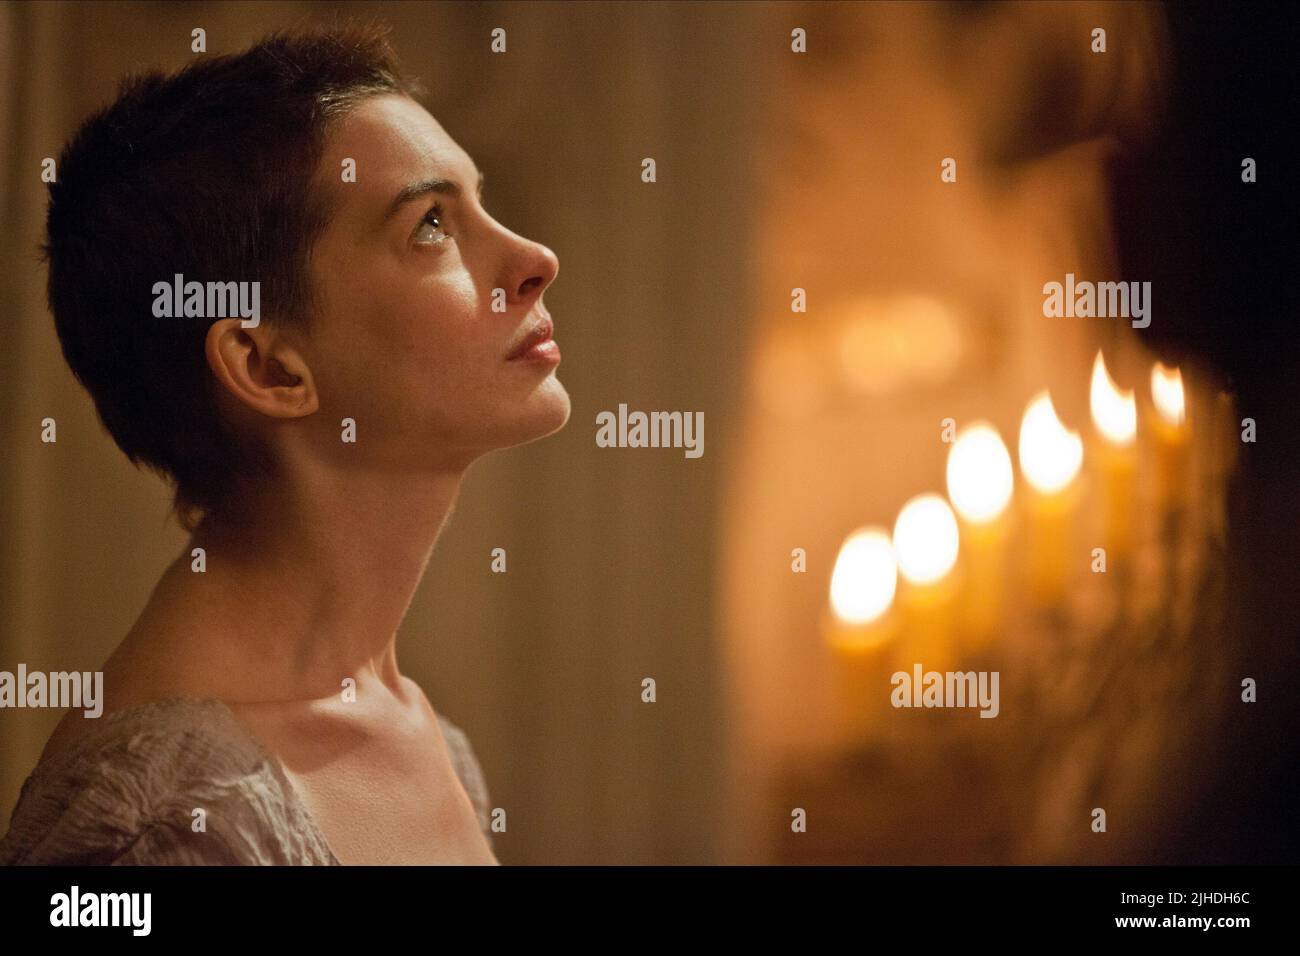 Anne Hathaway Les Miserables 2012 2JHDH6C 